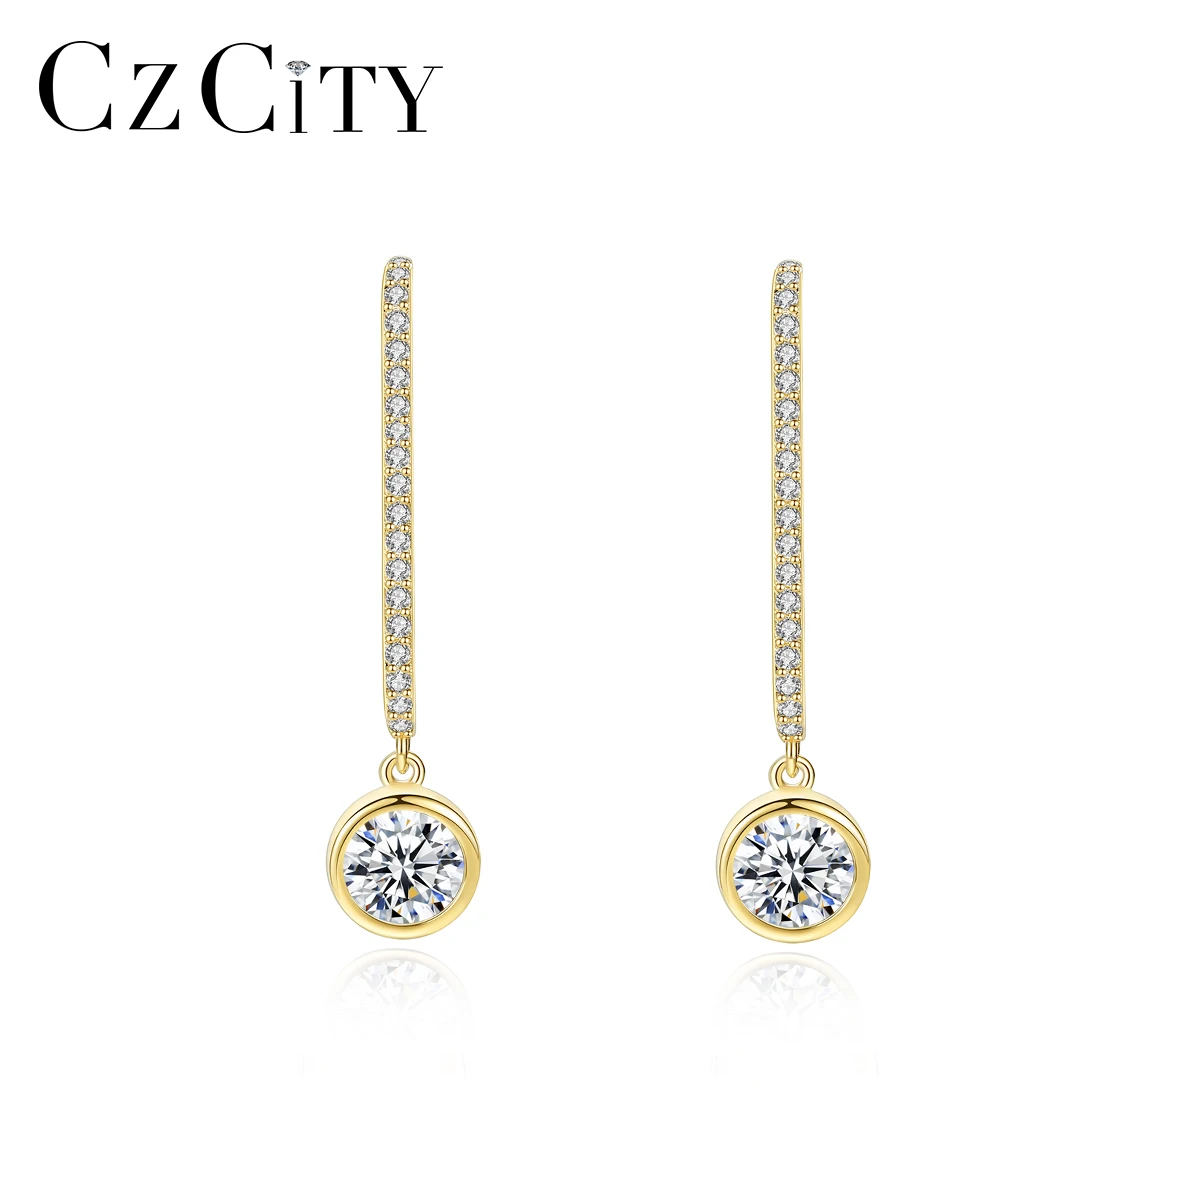 

CZCITY 18K Gold Vermeil Fashion Jewelry 925 Sterling Silver Earrings 2021 High Polish Round Drops Earrings Women